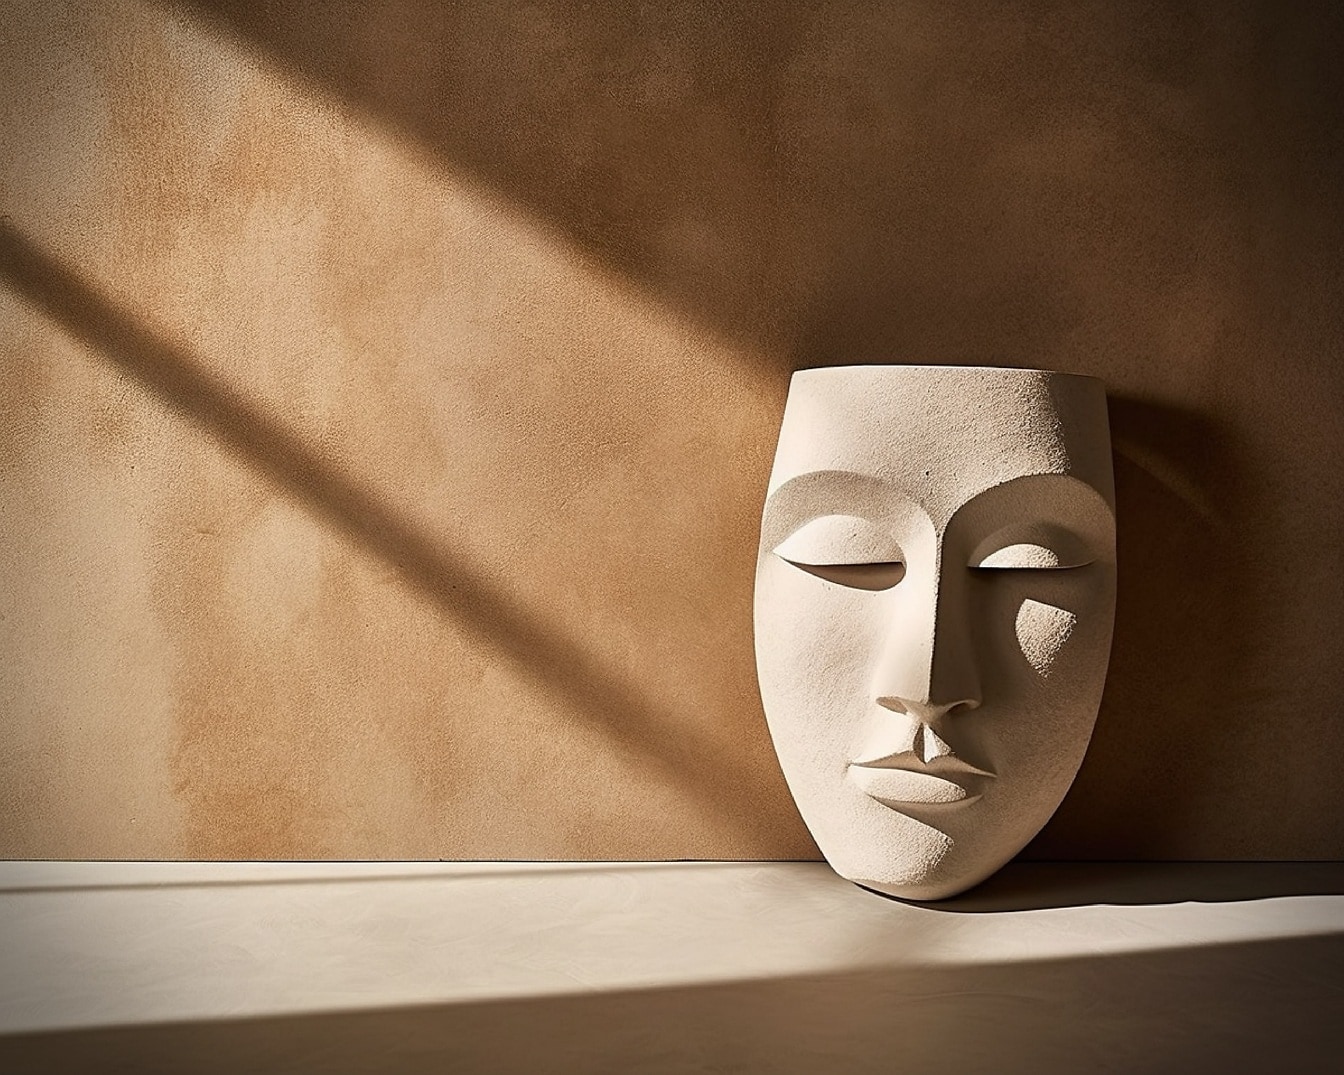 Máscara de terracota bege na sombra por parede marrom claro